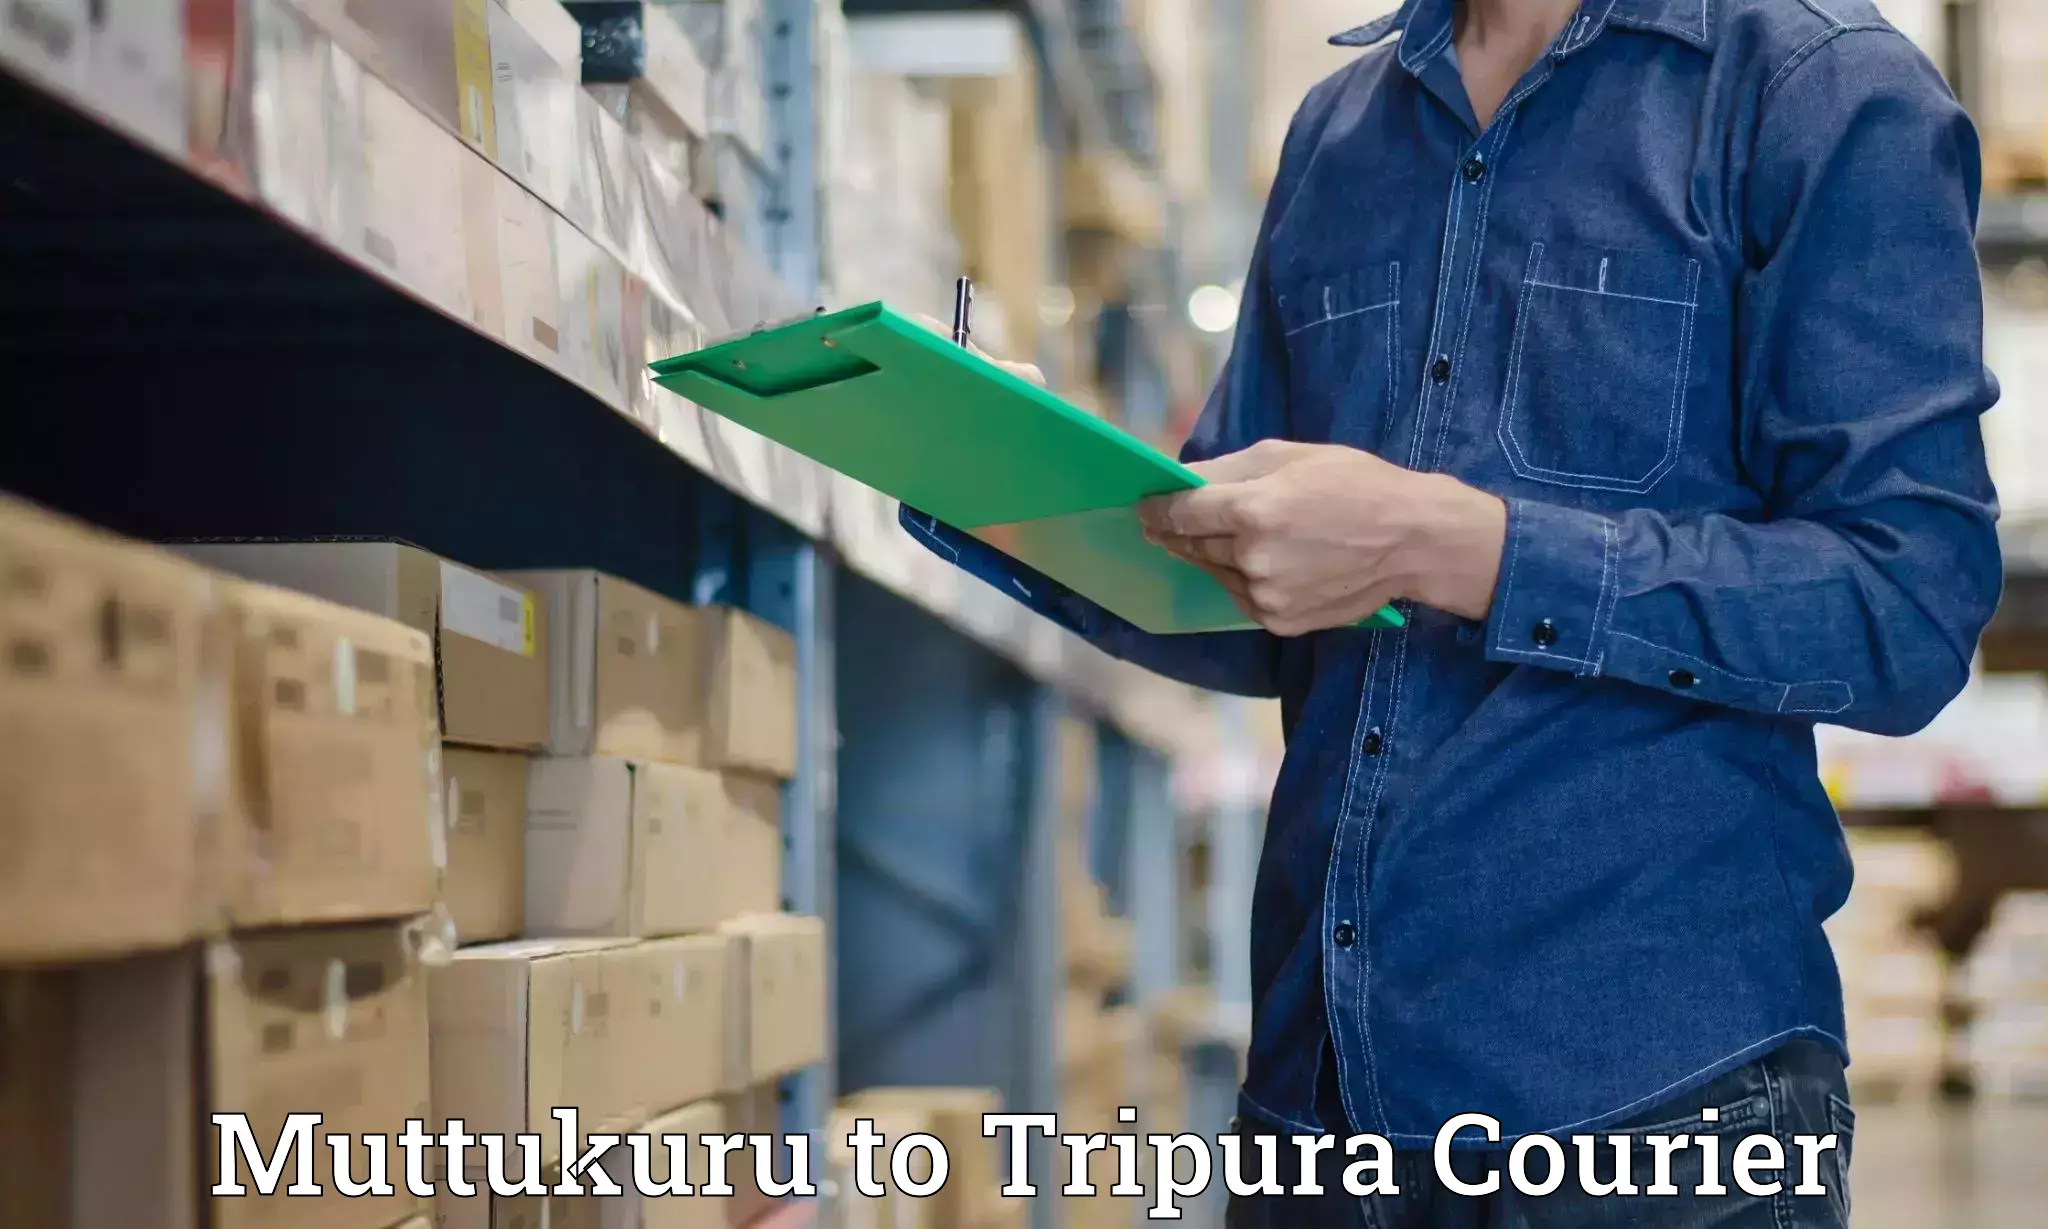 Quick dispatch service Muttukuru to Agartala